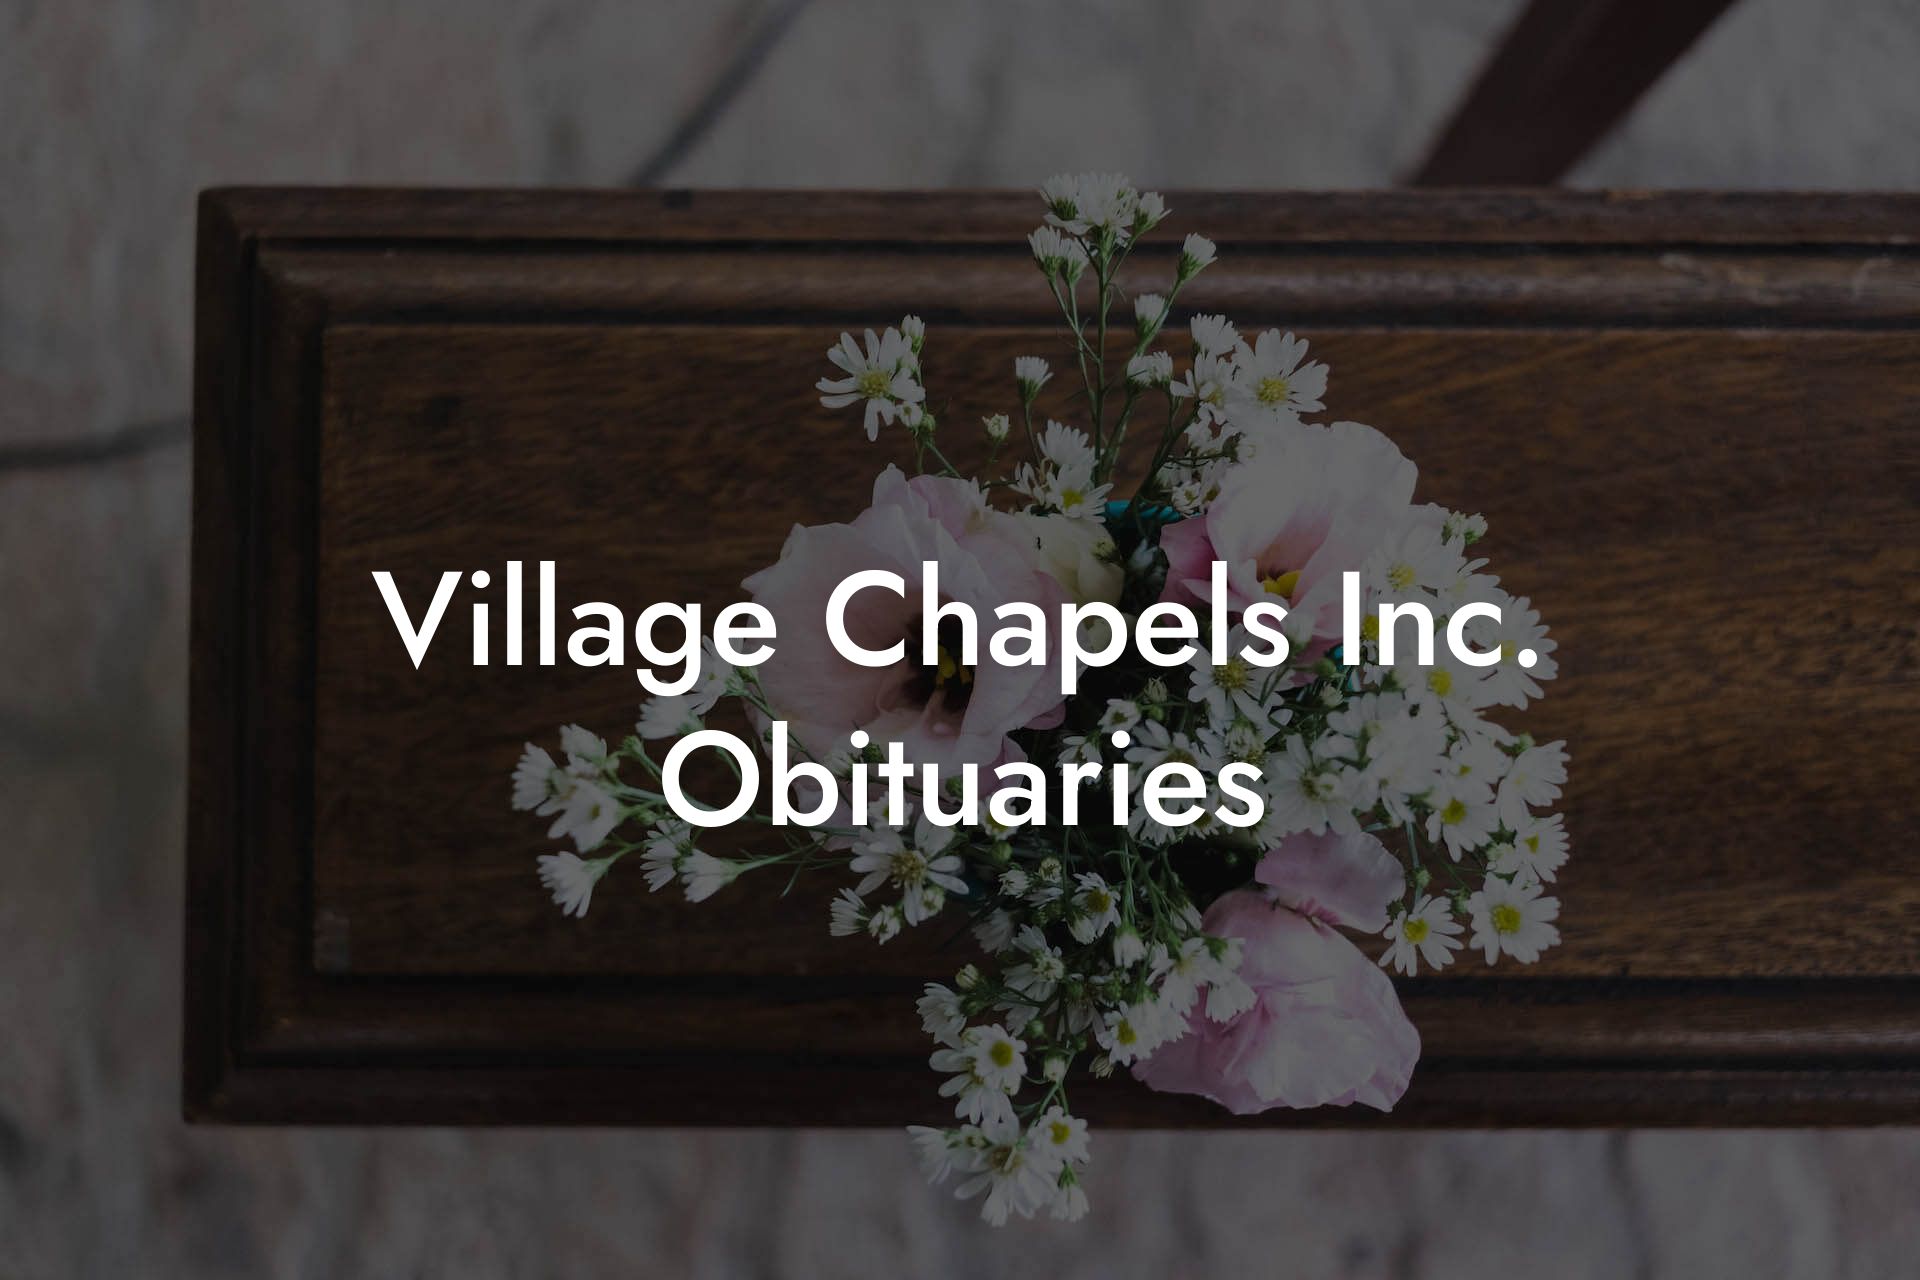 Village Chapels Inc. Obituaries